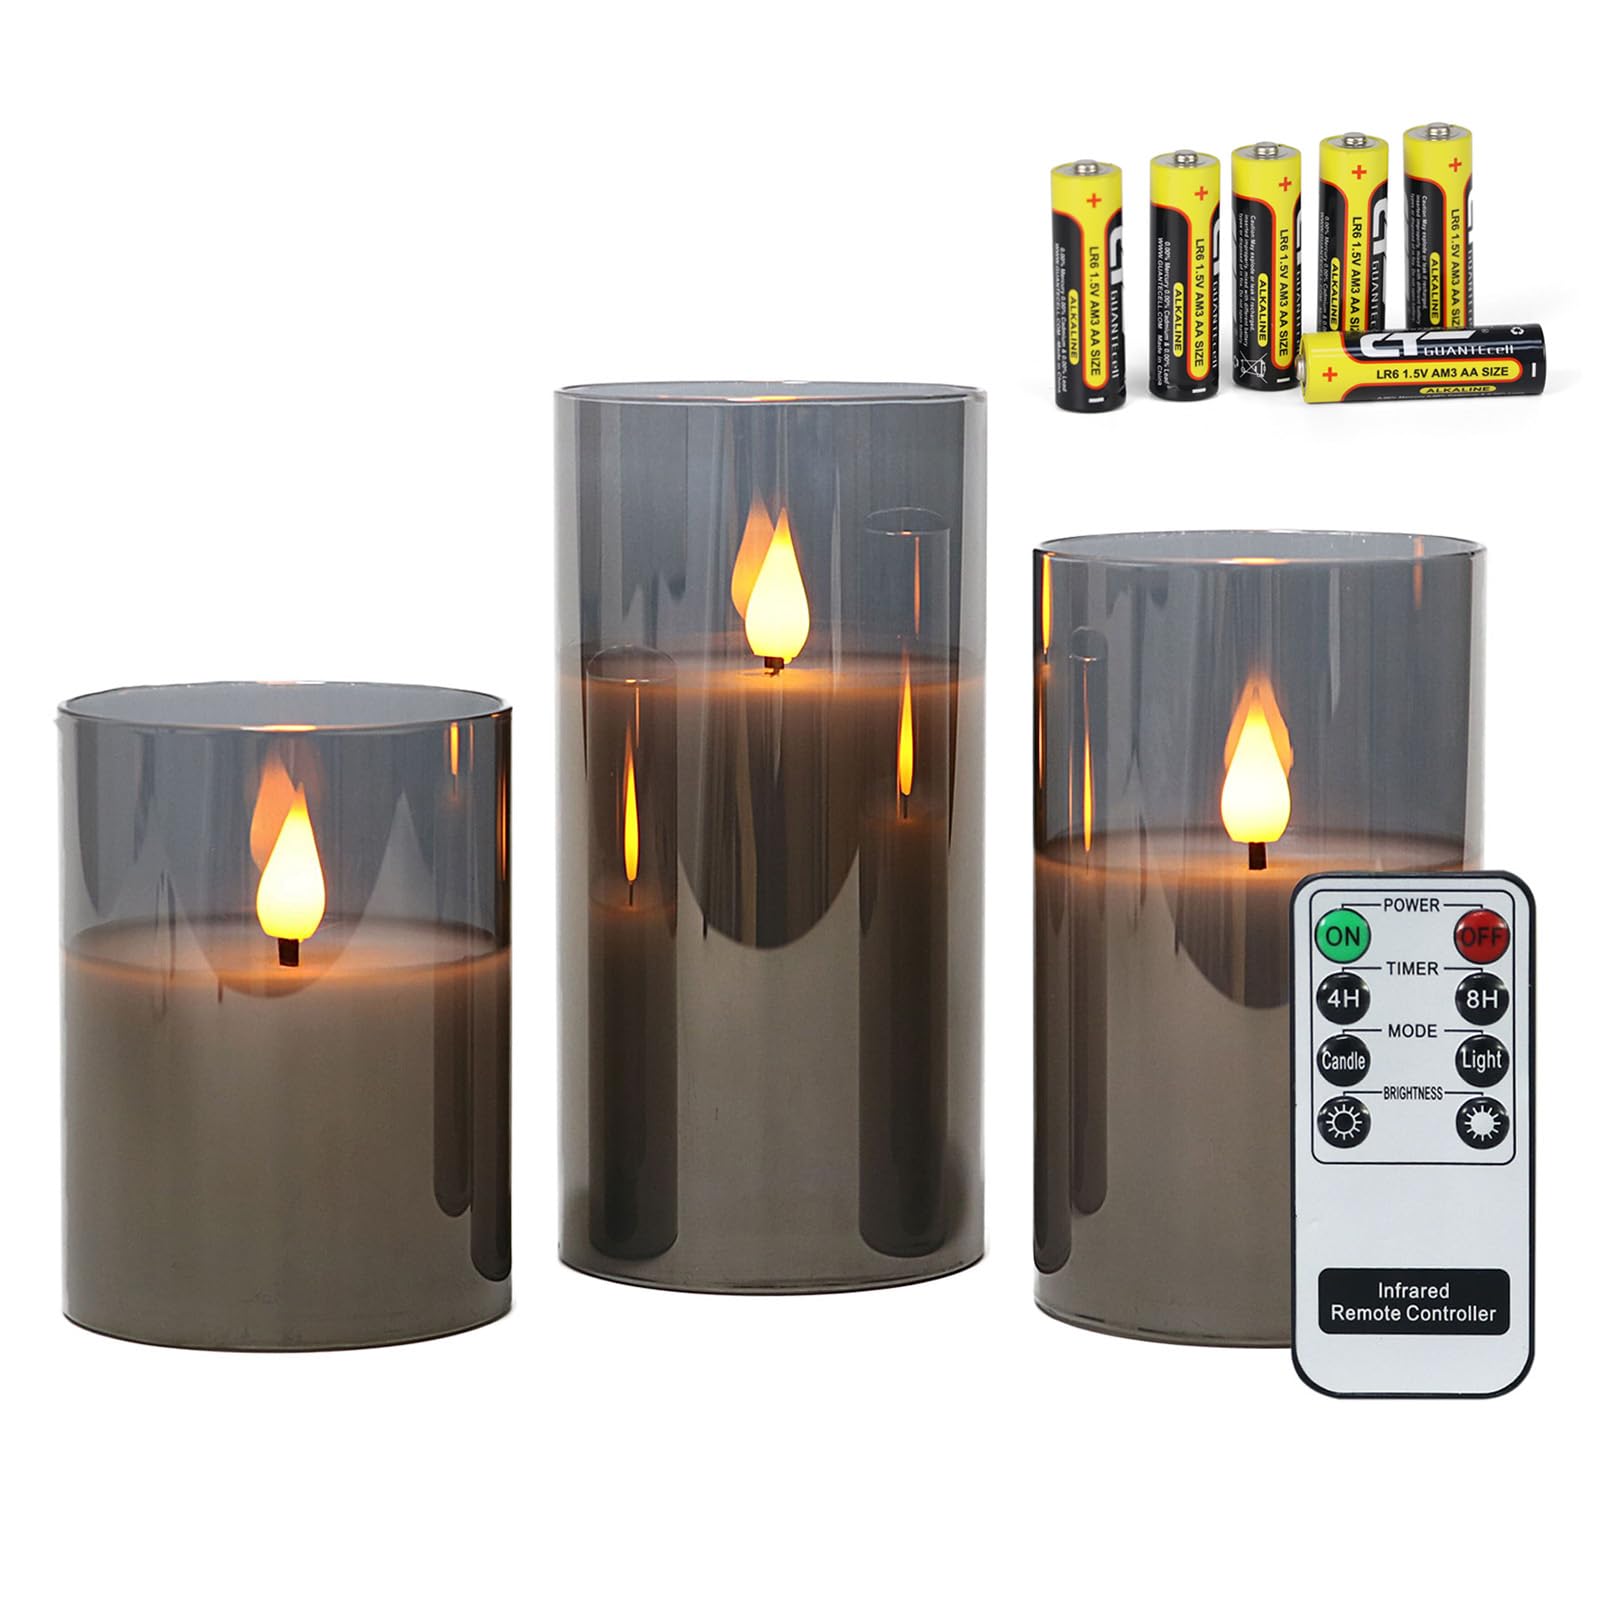 Rhytsing Grau flammenlose Kerzen im Glas, 3 Glaswindlichter mit Fernbedienung und Timerfunktion, warmweiße Licht mit Batterien enthalten